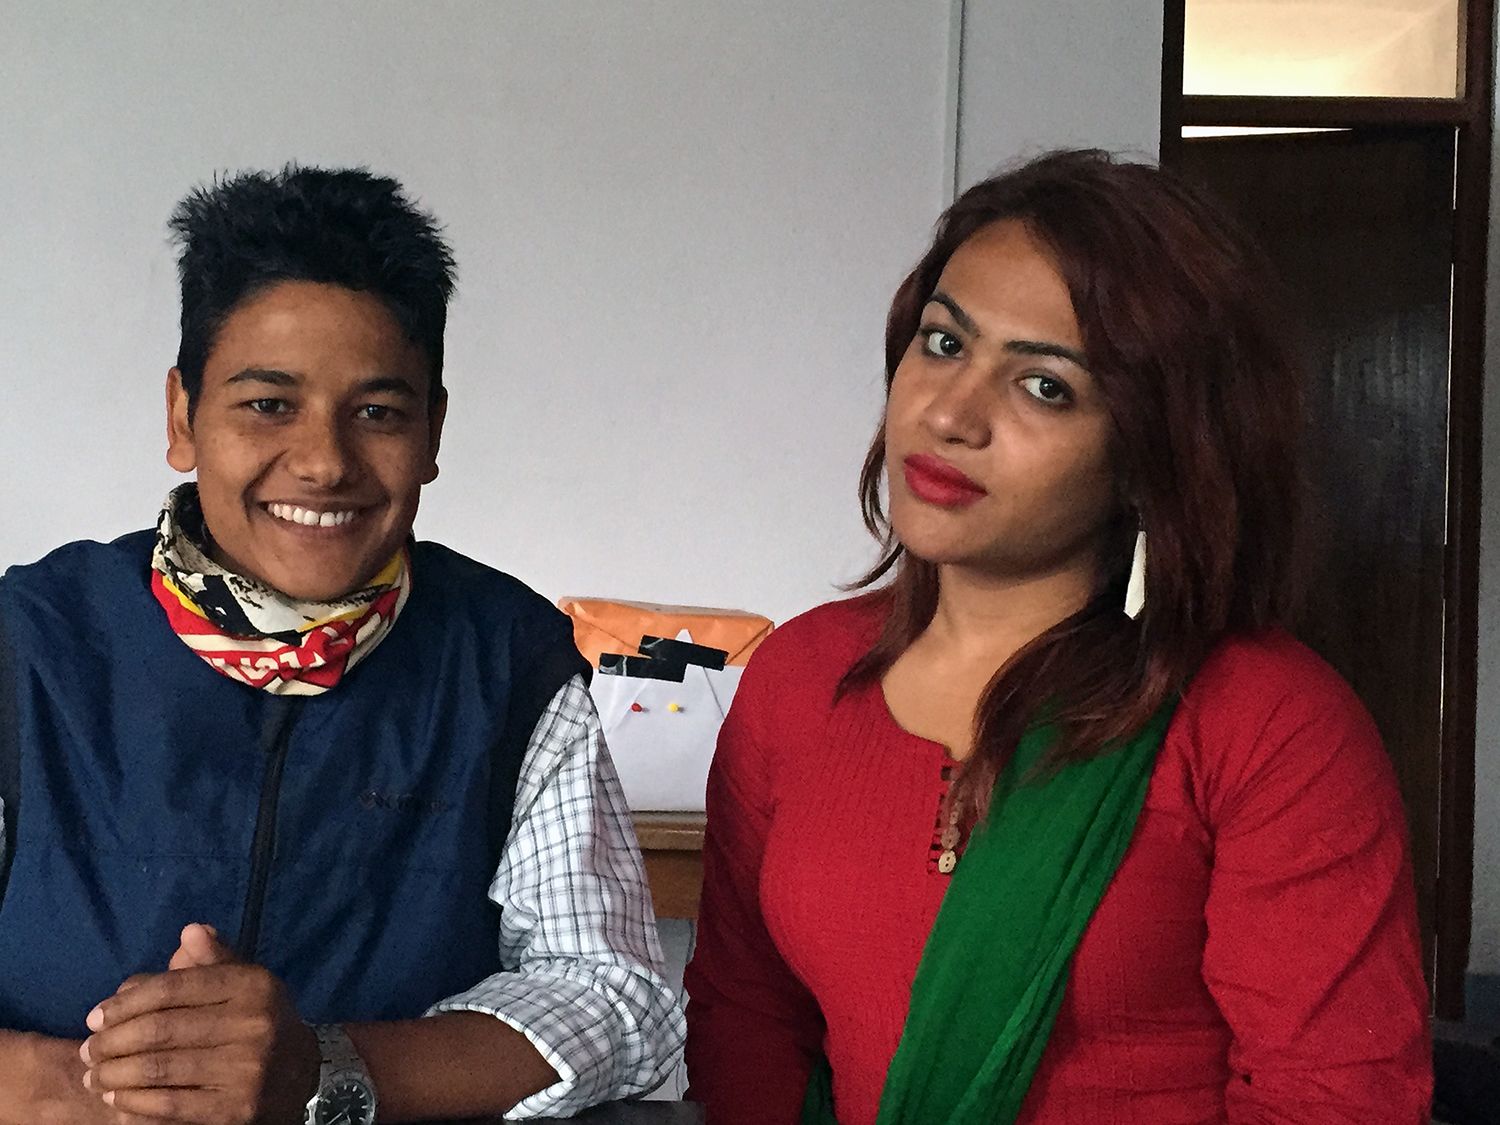 Nepal offers 'third gender' option | CNN